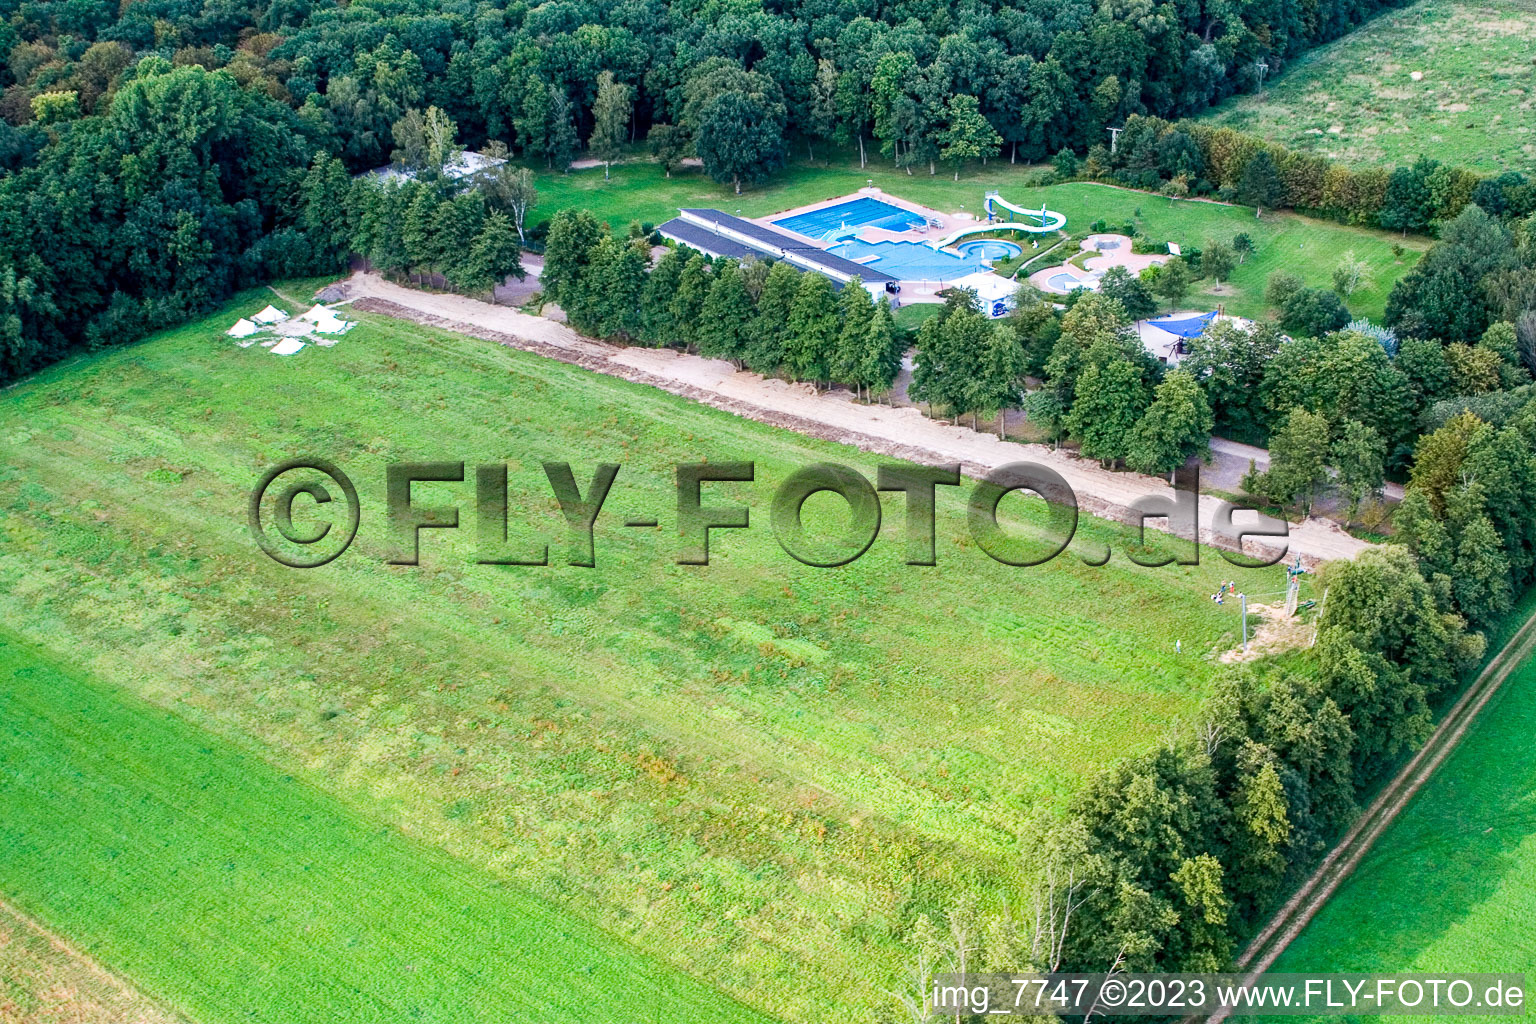 Luftbild von Kandel, Riesenseilrutsche, Camp von Fun-Forest im Bundesland Rheinland-Pfalz, Deutschland